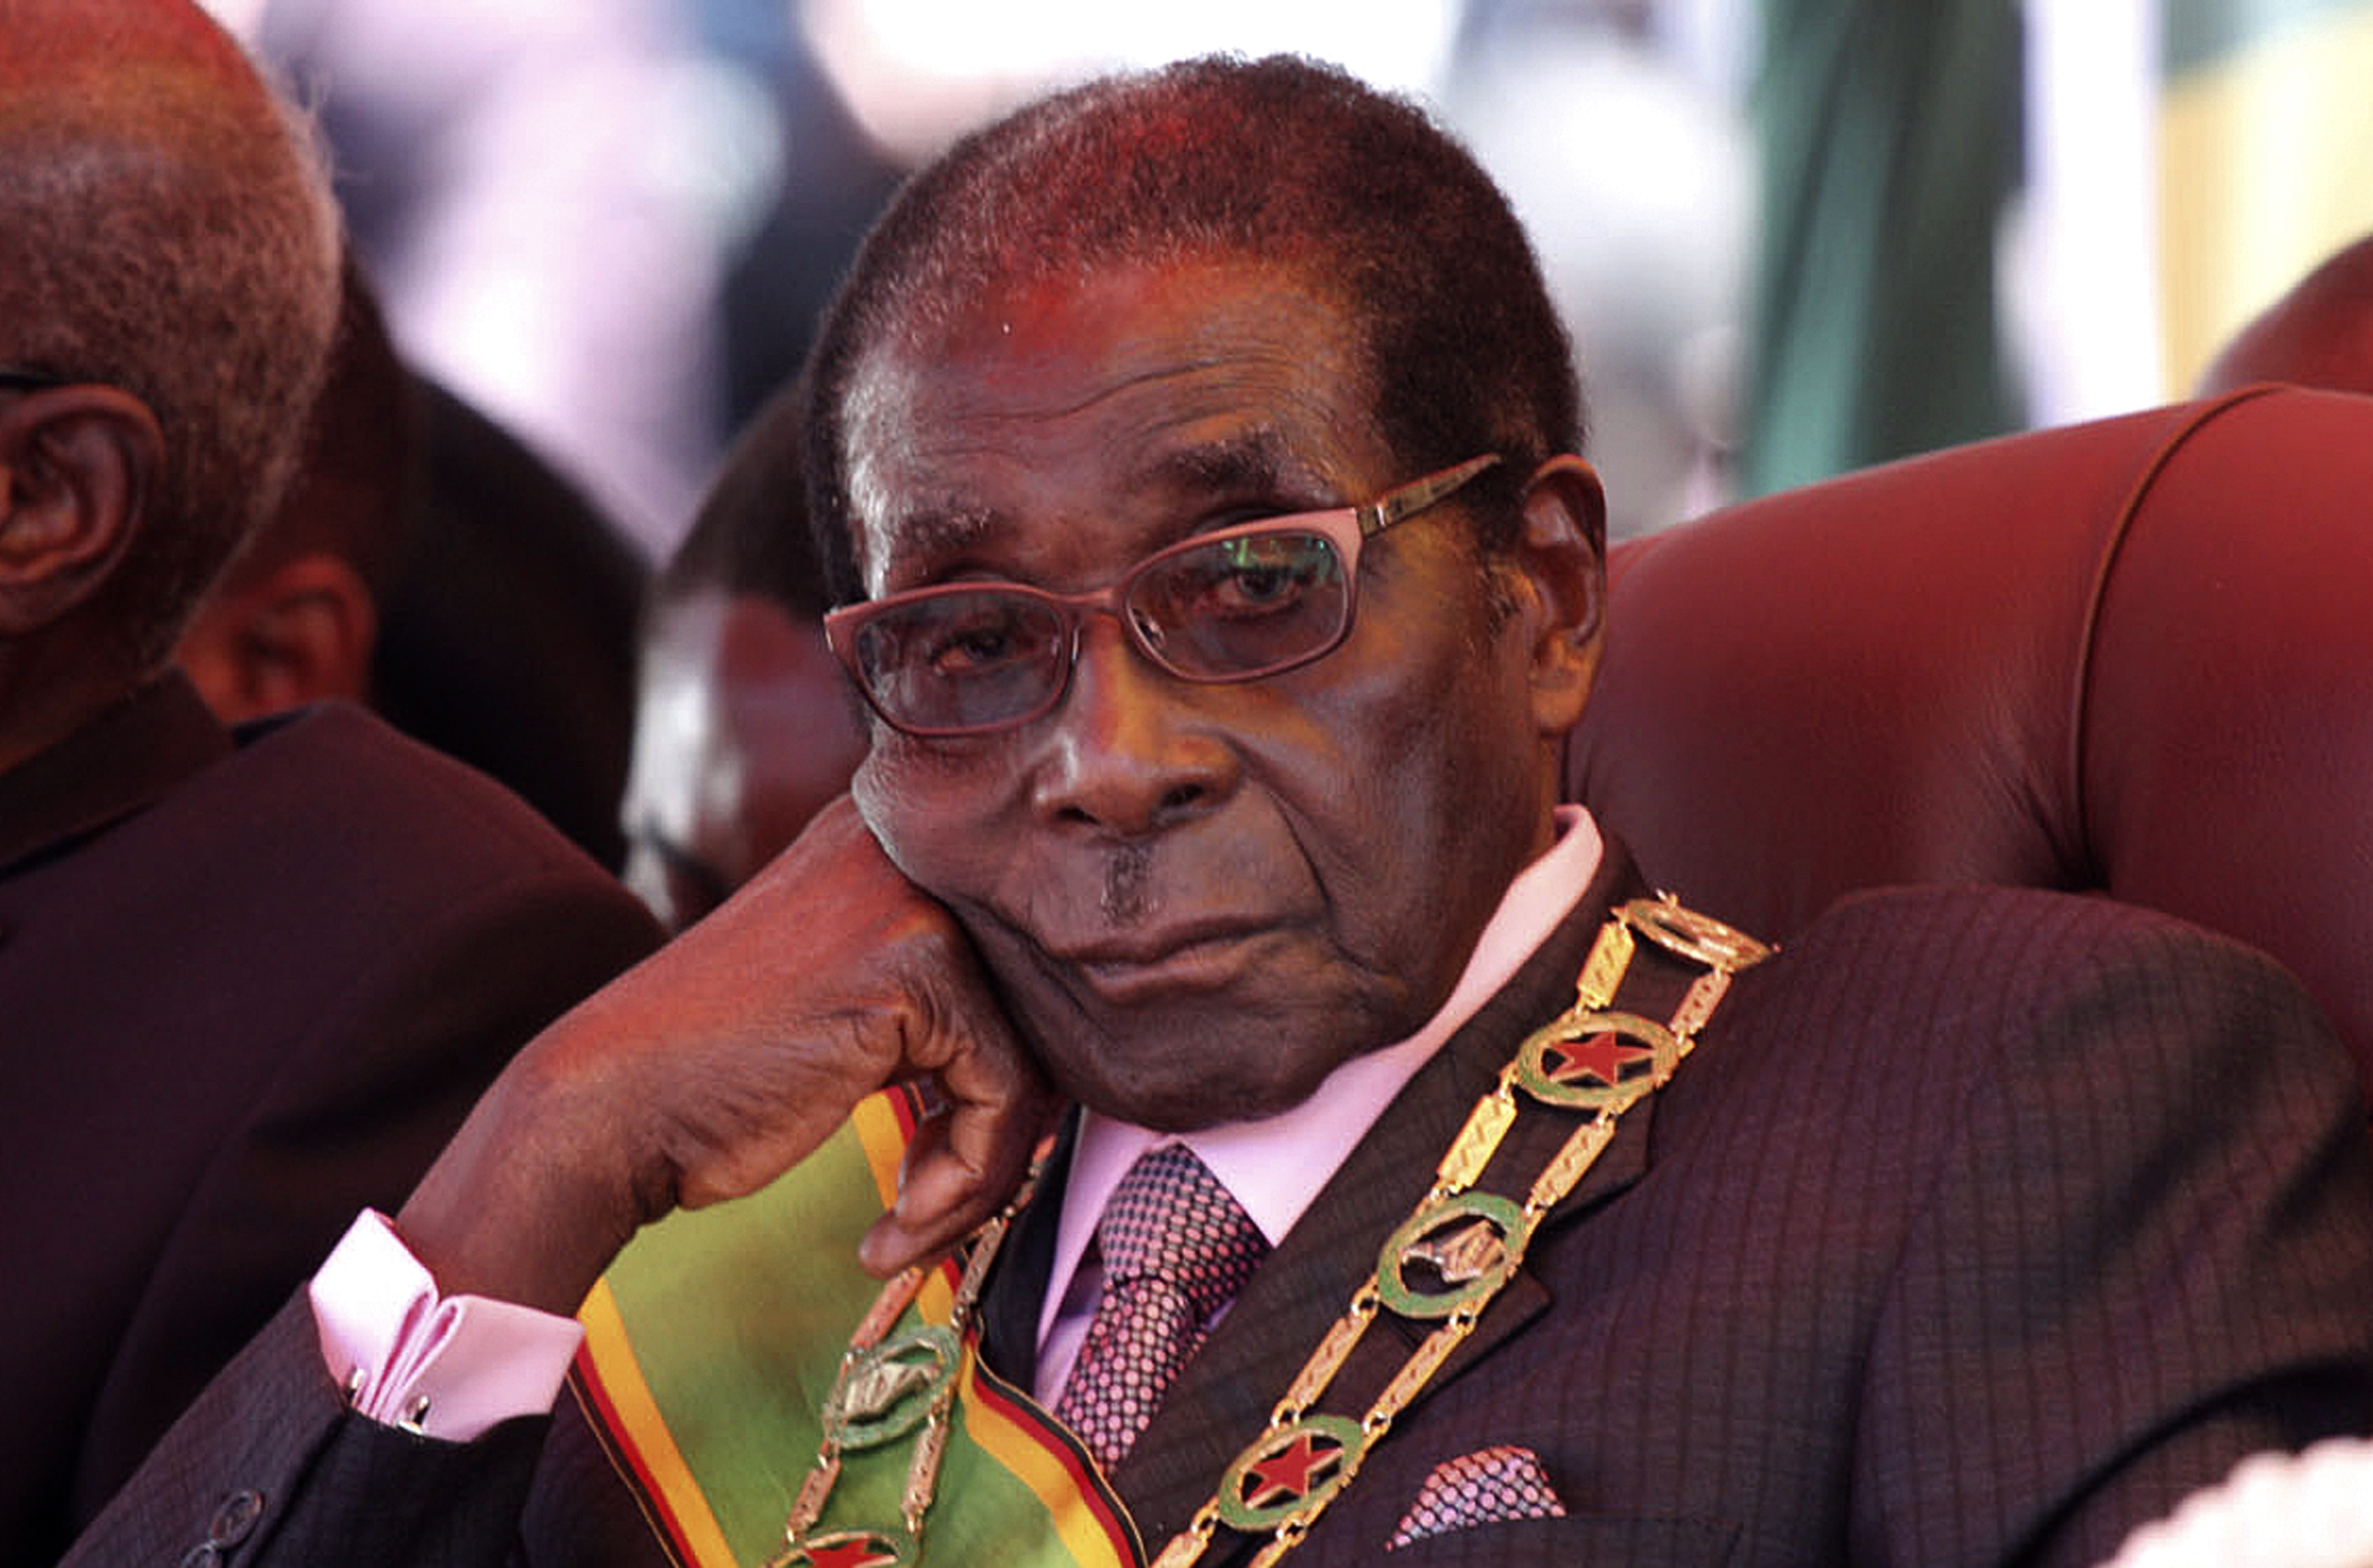 Le généreux plan de retraite de Mugabe dévoilé